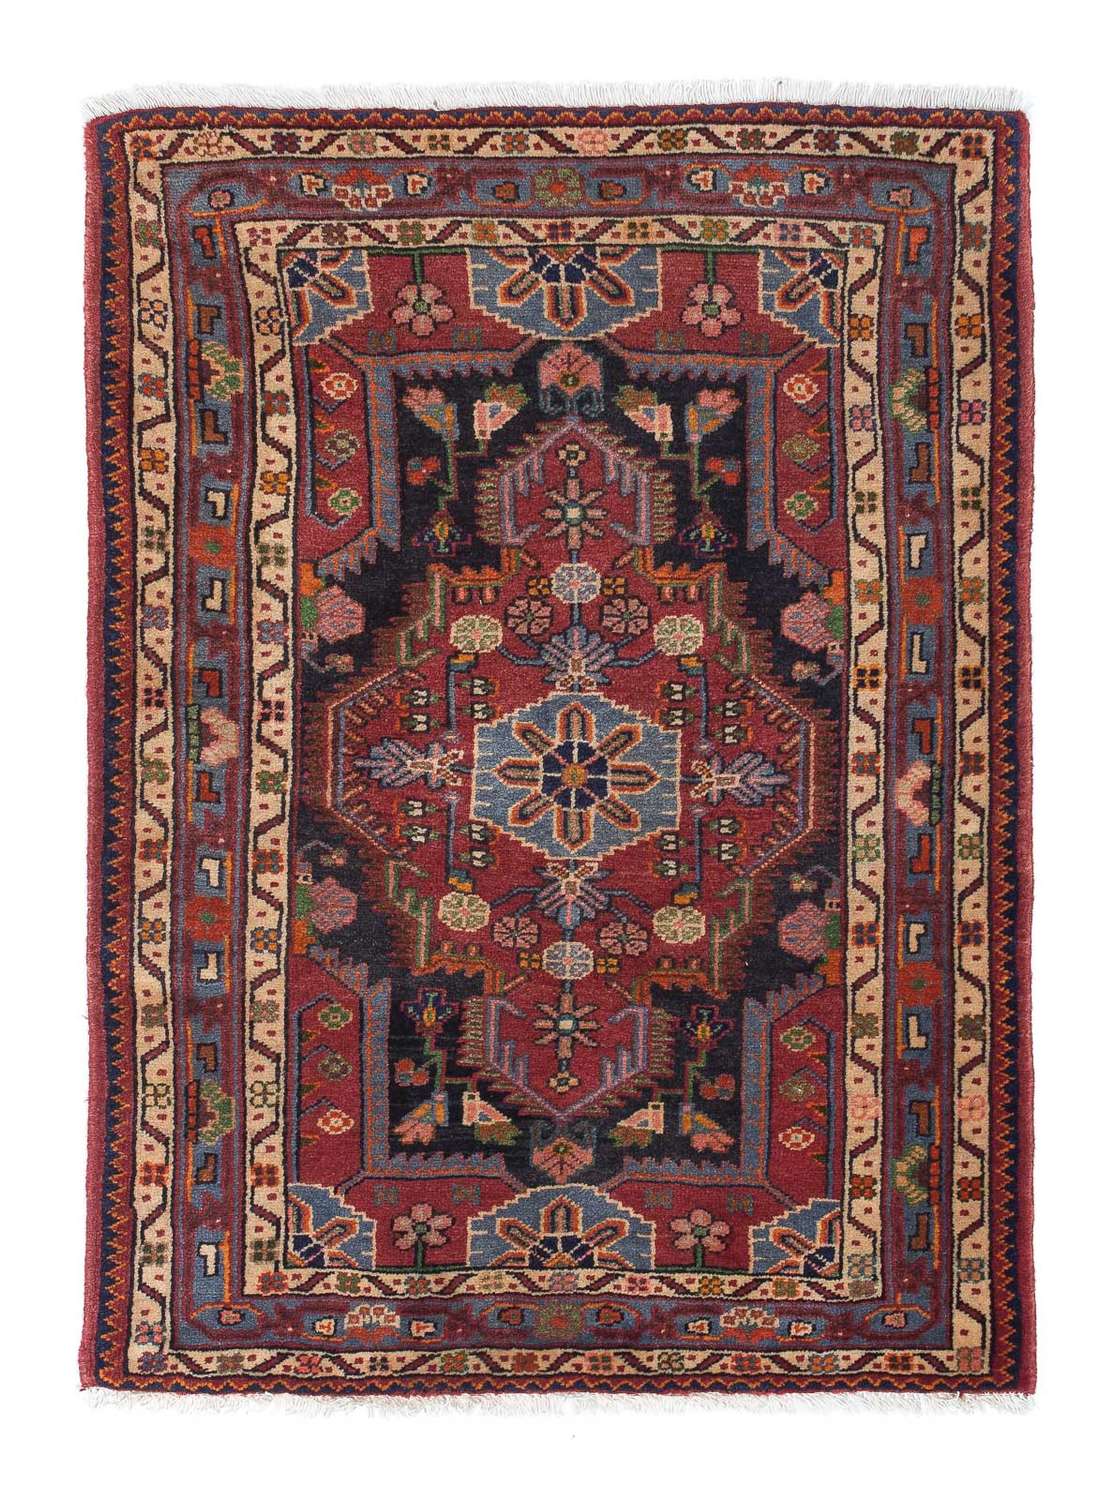 Tapis persan - Nomadic - 126 x 88 cm - rouge clair